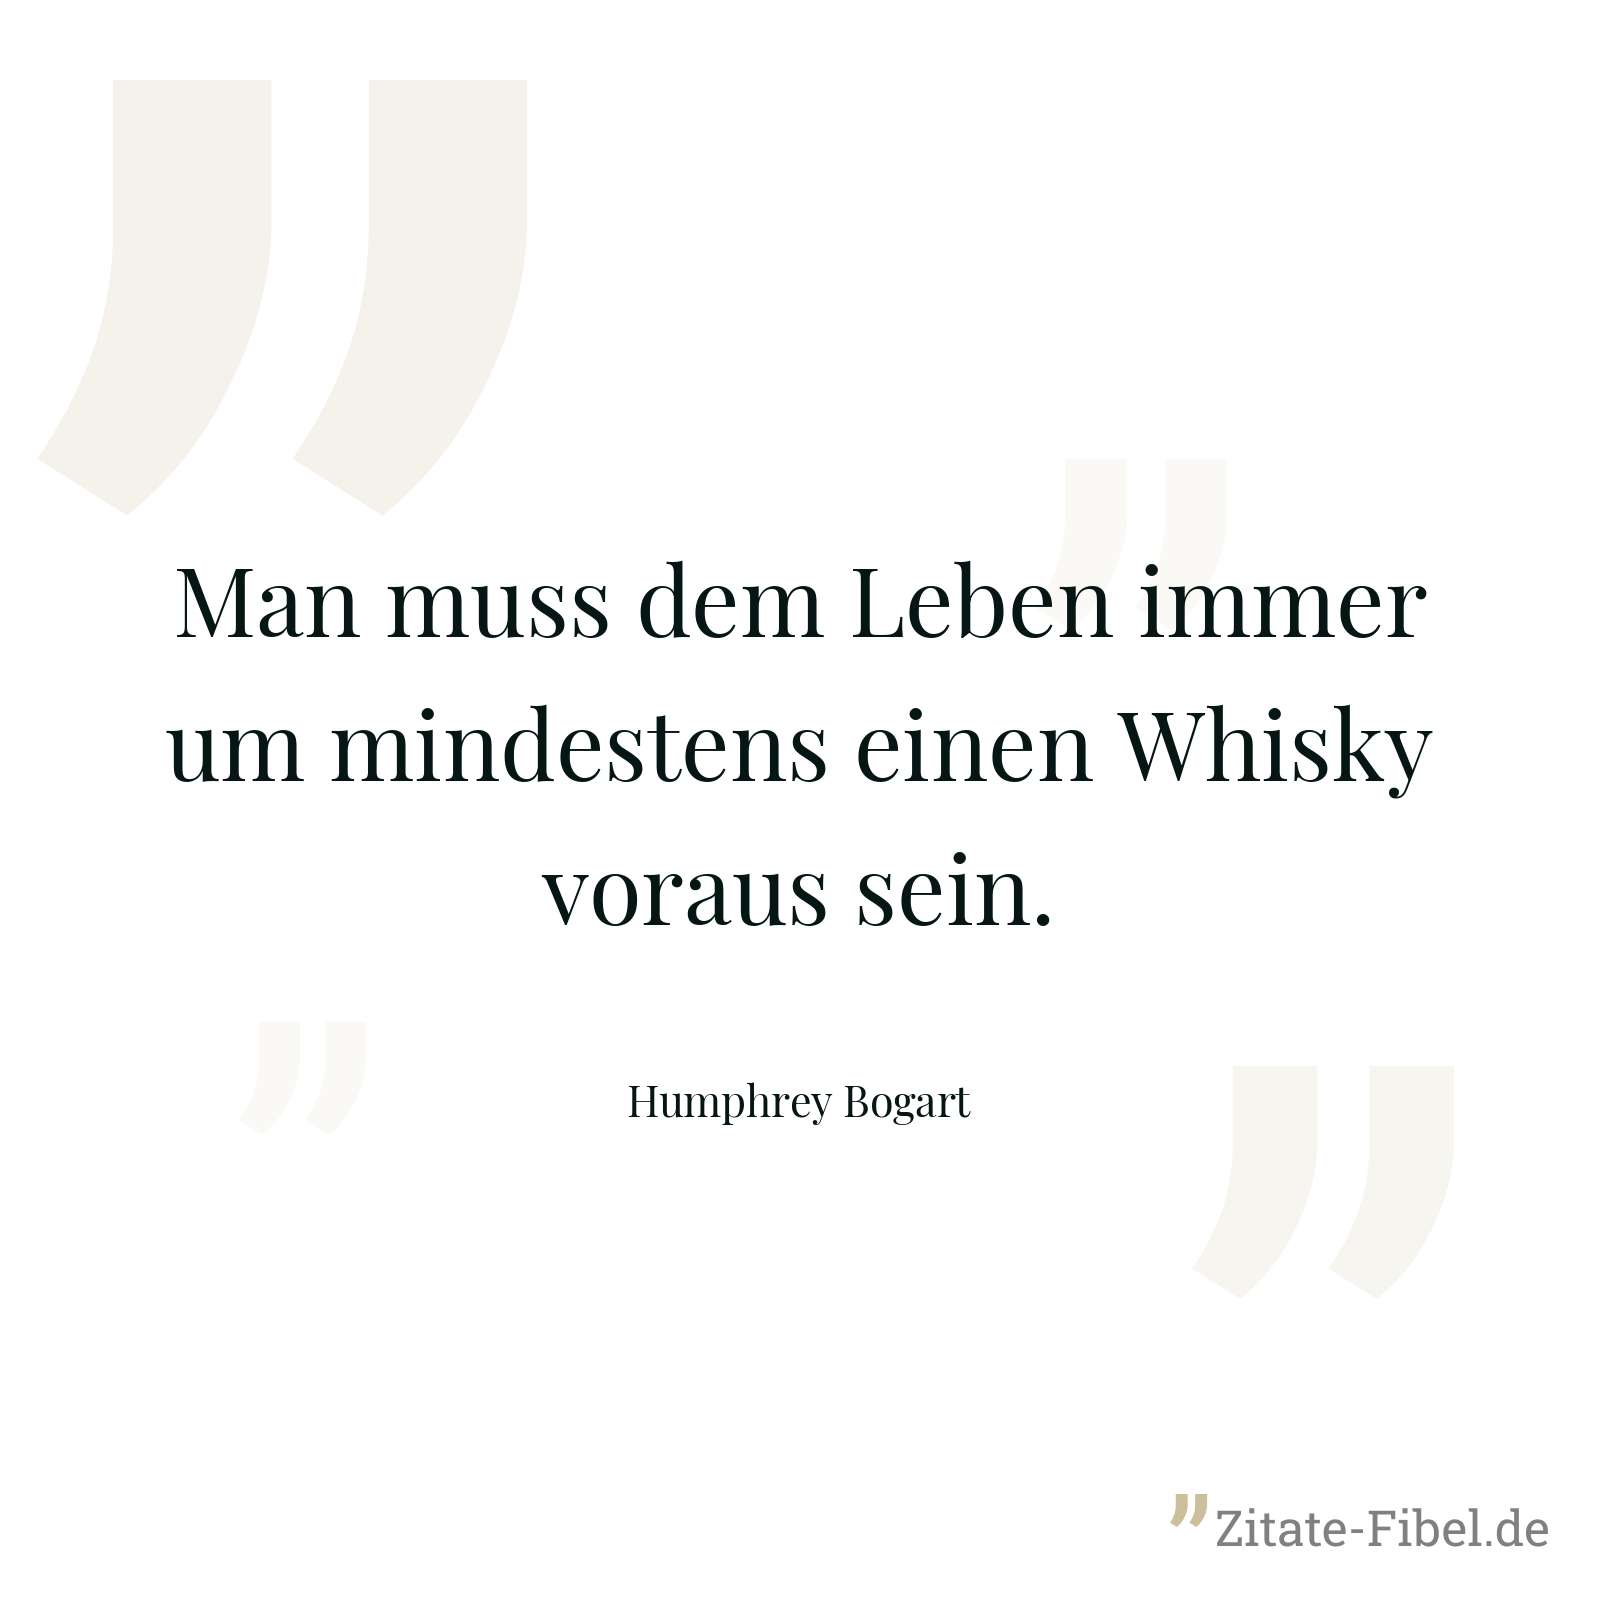 Man muss dem Leben immer um mindestens einen Whisky voraus sein. - Humphrey Bogart